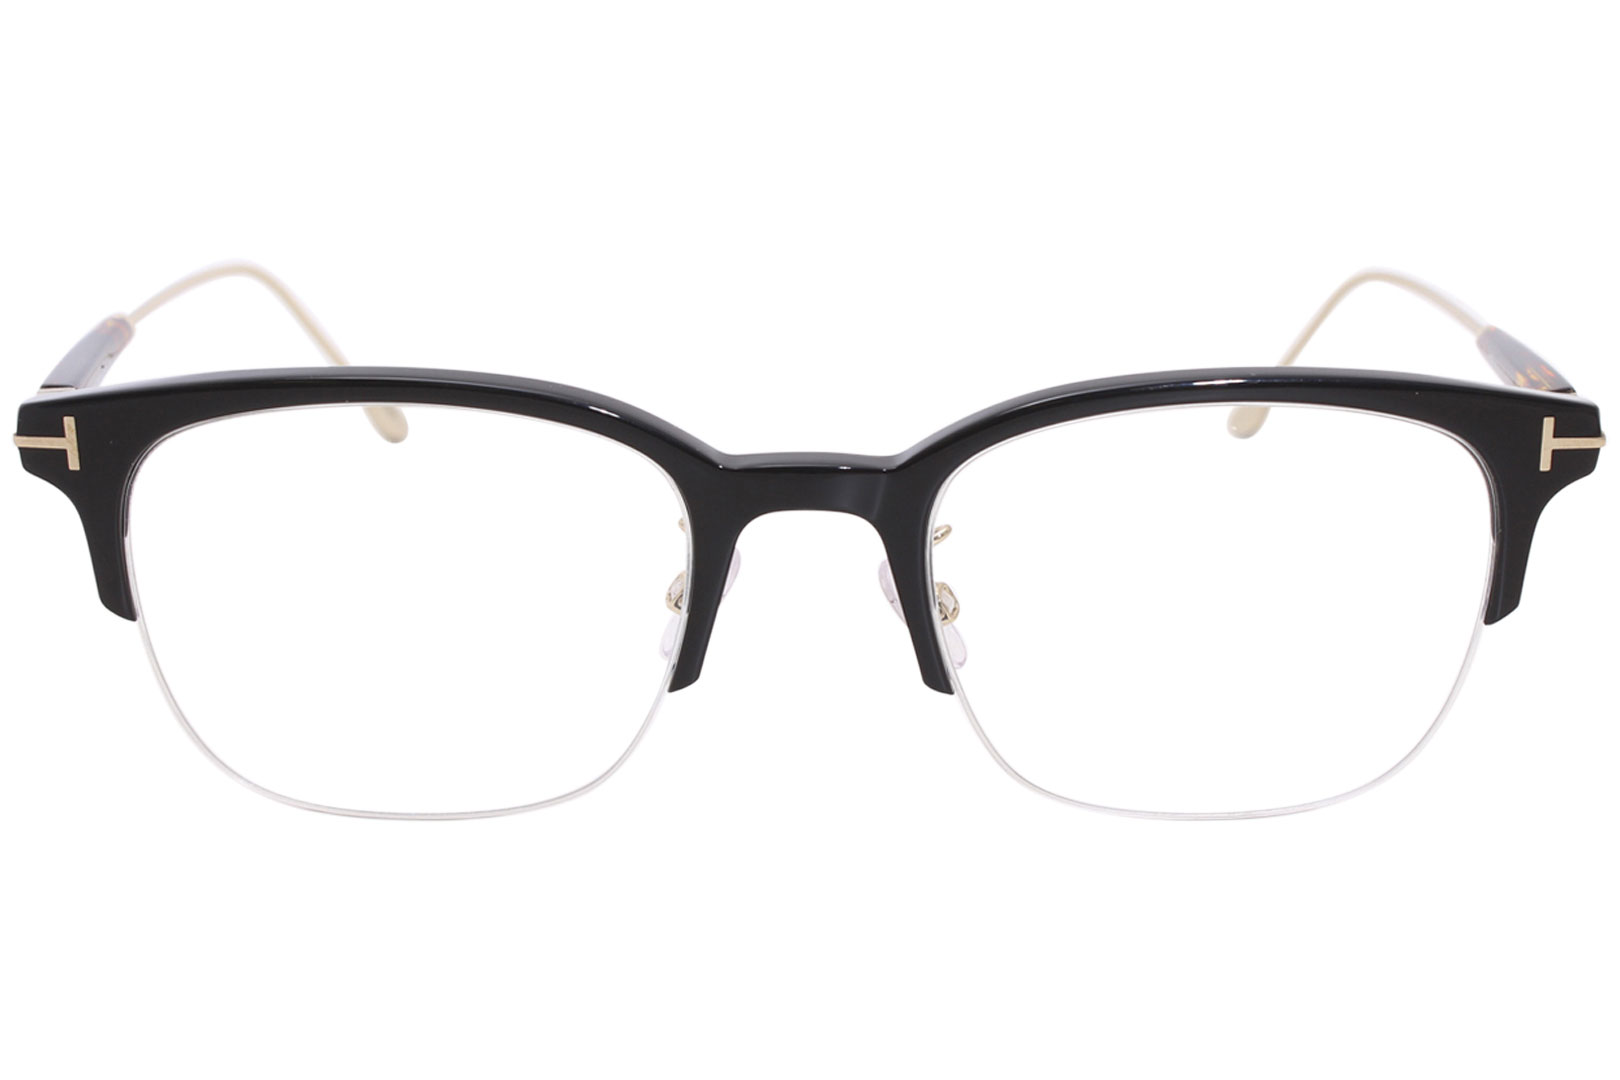 Tom Ford TF5645-D 001 Men's Eyeglasses Black/Gold/Havana Optical Frame 52mm